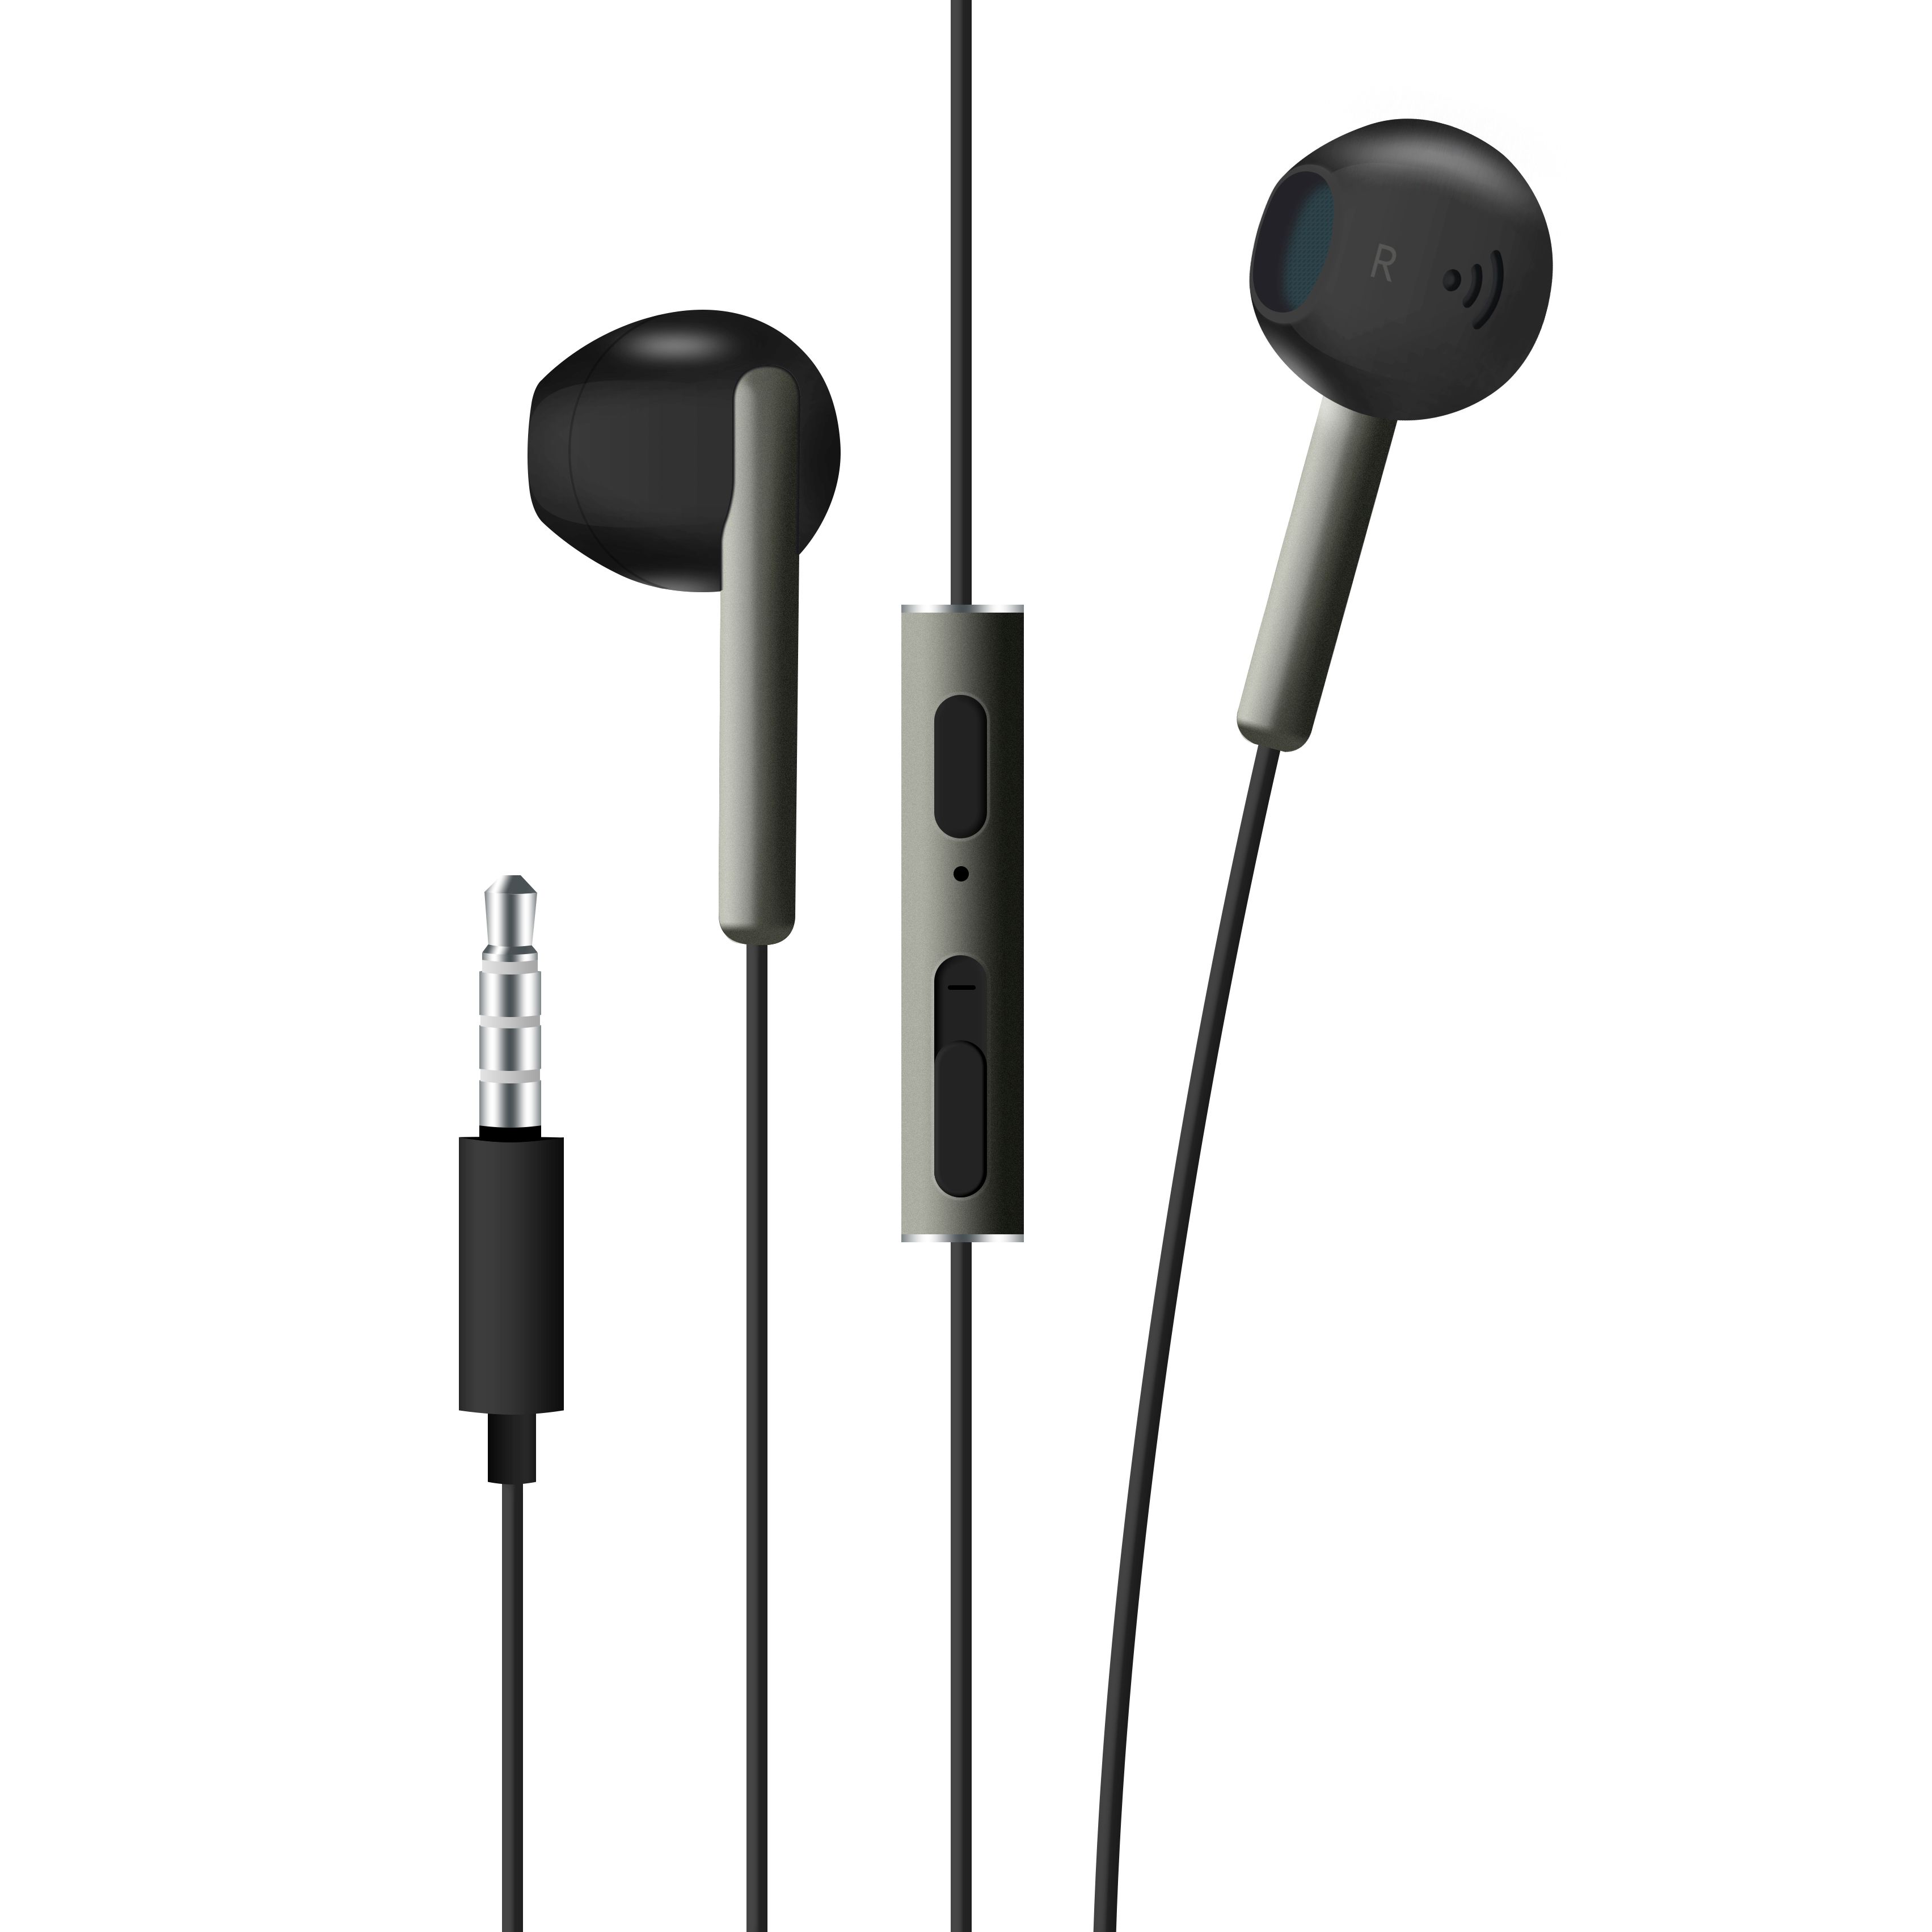 Pecková sluchátka FIXED EGG4 s mikrofonem a ovladačem hlasitosti, voděodolnost IPX3, černostříbrná